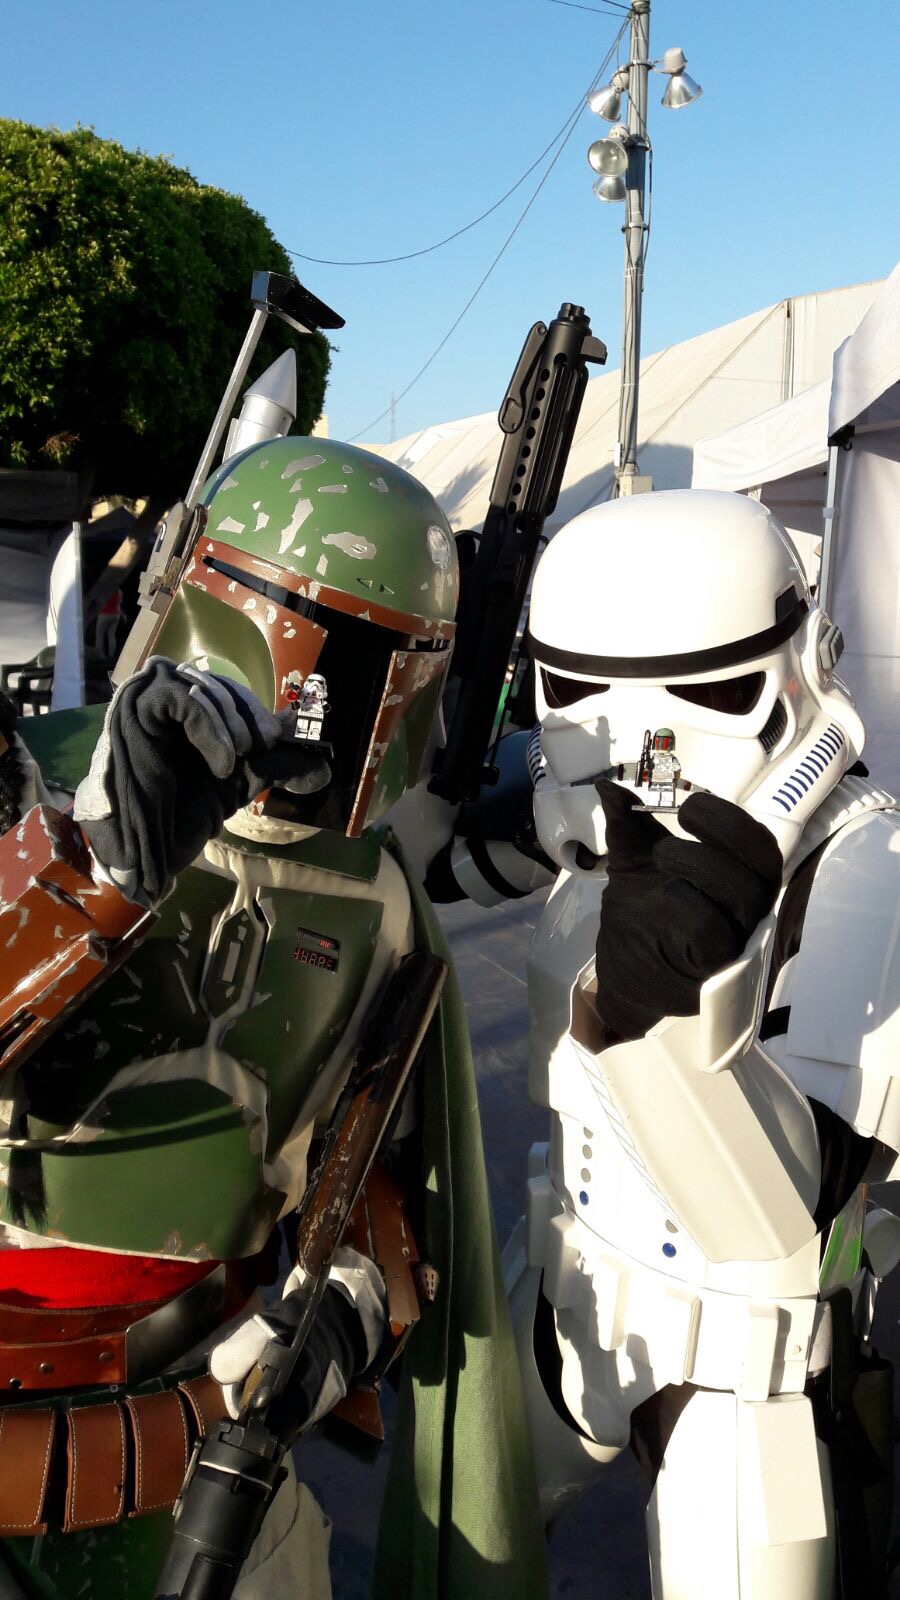 Stormtrooper Boba Fett Replica Costume Review Ignacio